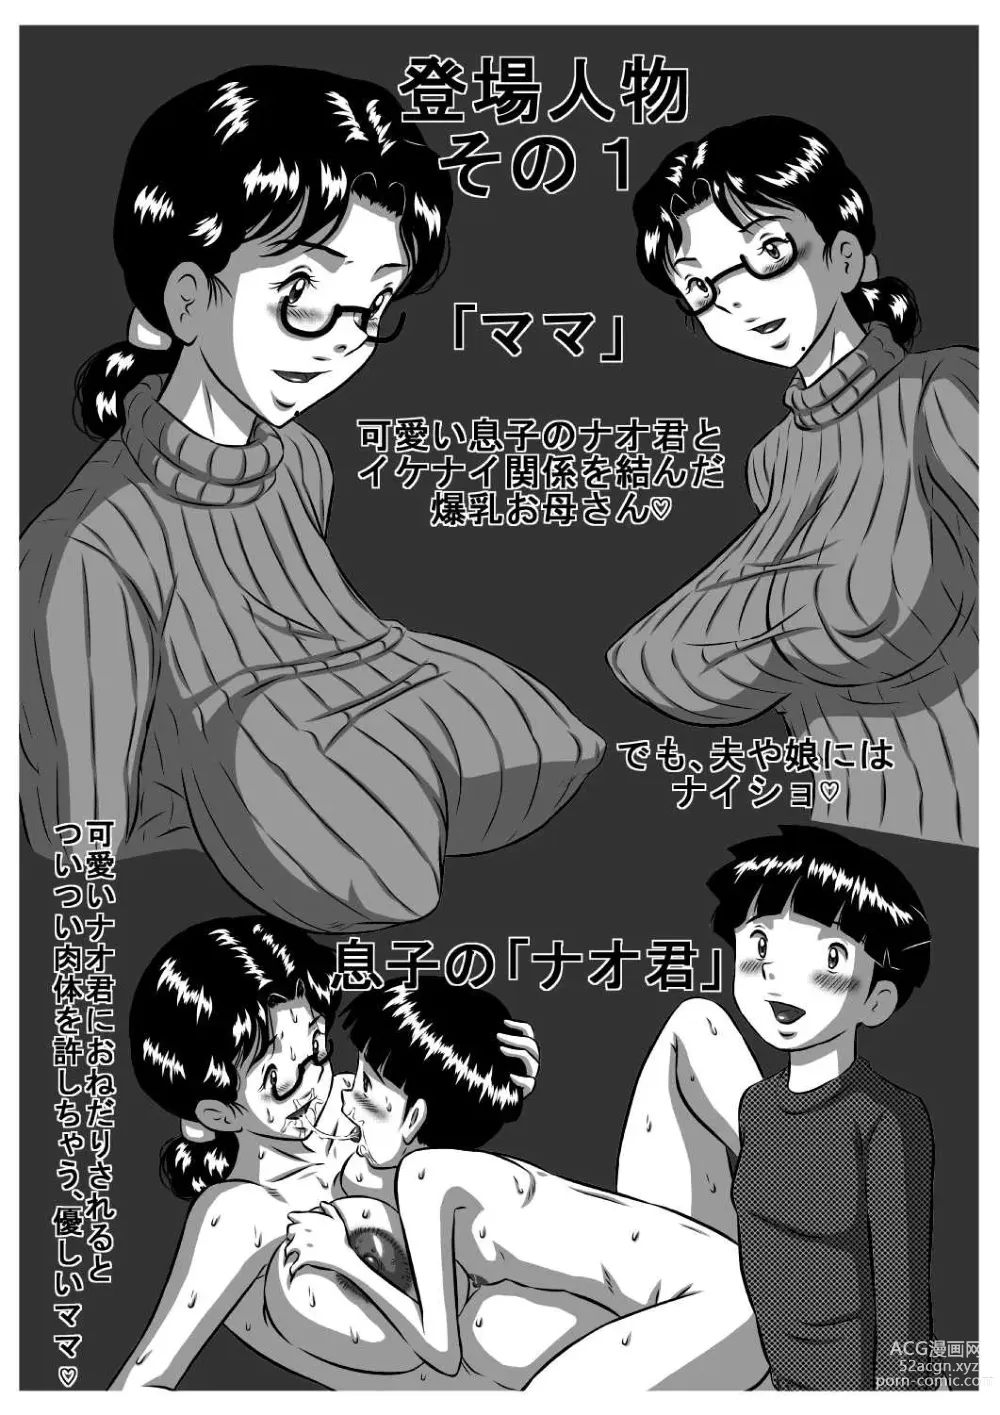 Page 2 of doujinshi Haha x Musuko + Chichi x Musume! Konya  mo Kinshinsoukan (Sex) Shinai to! Saa, Kazoku Minna de!